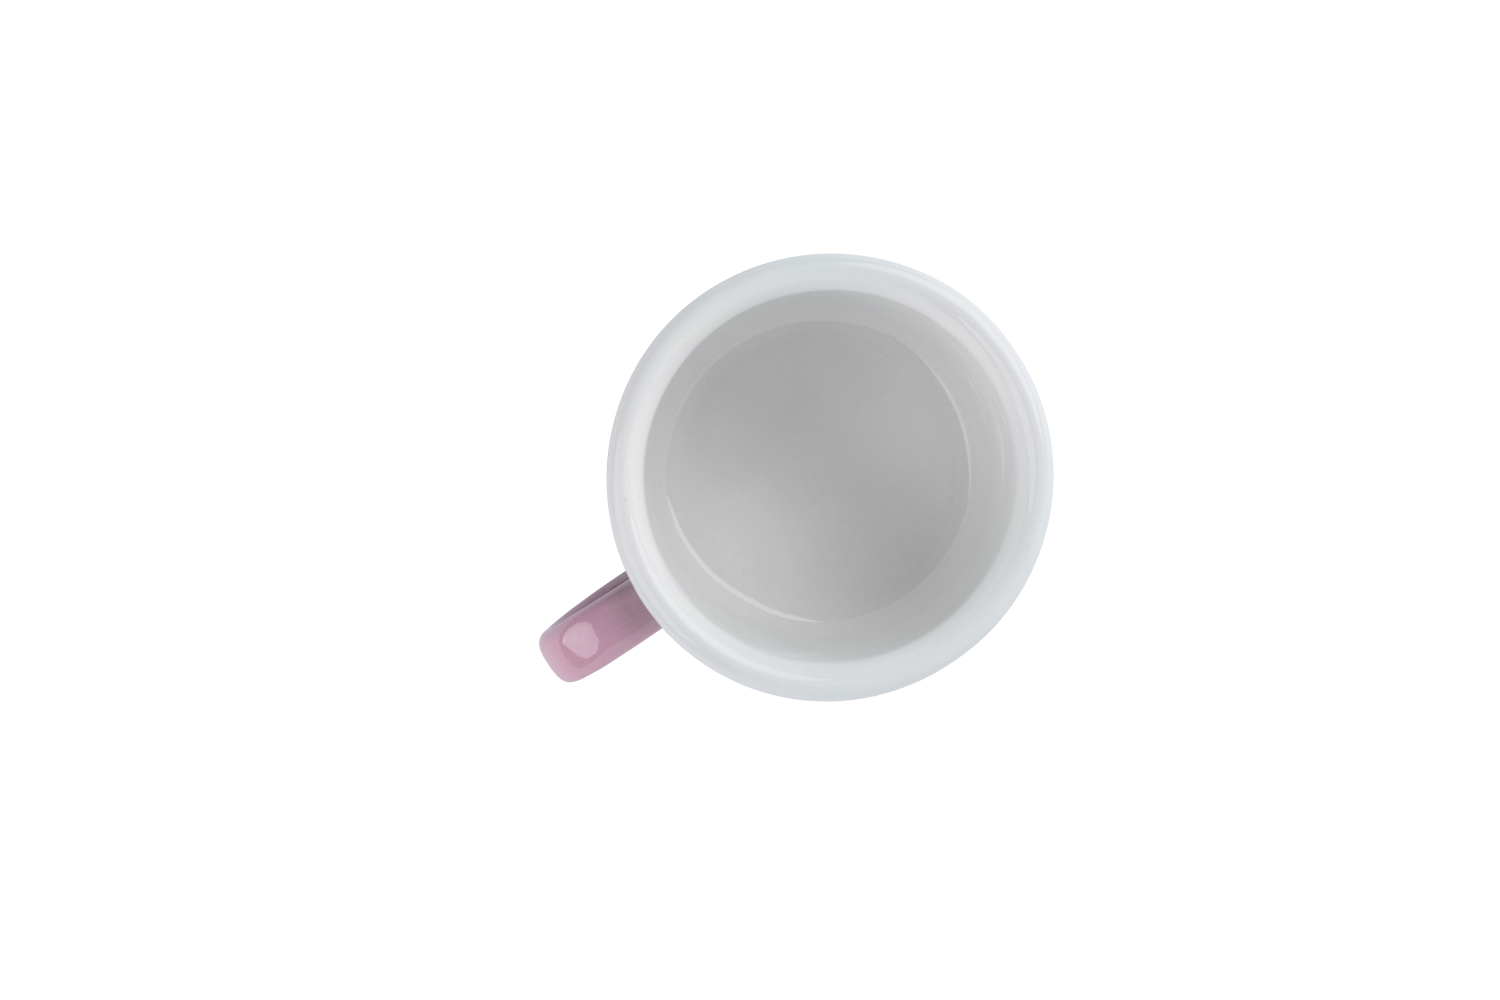 Blick ins weiße Innere der pastellrosa Emaille-Tasse